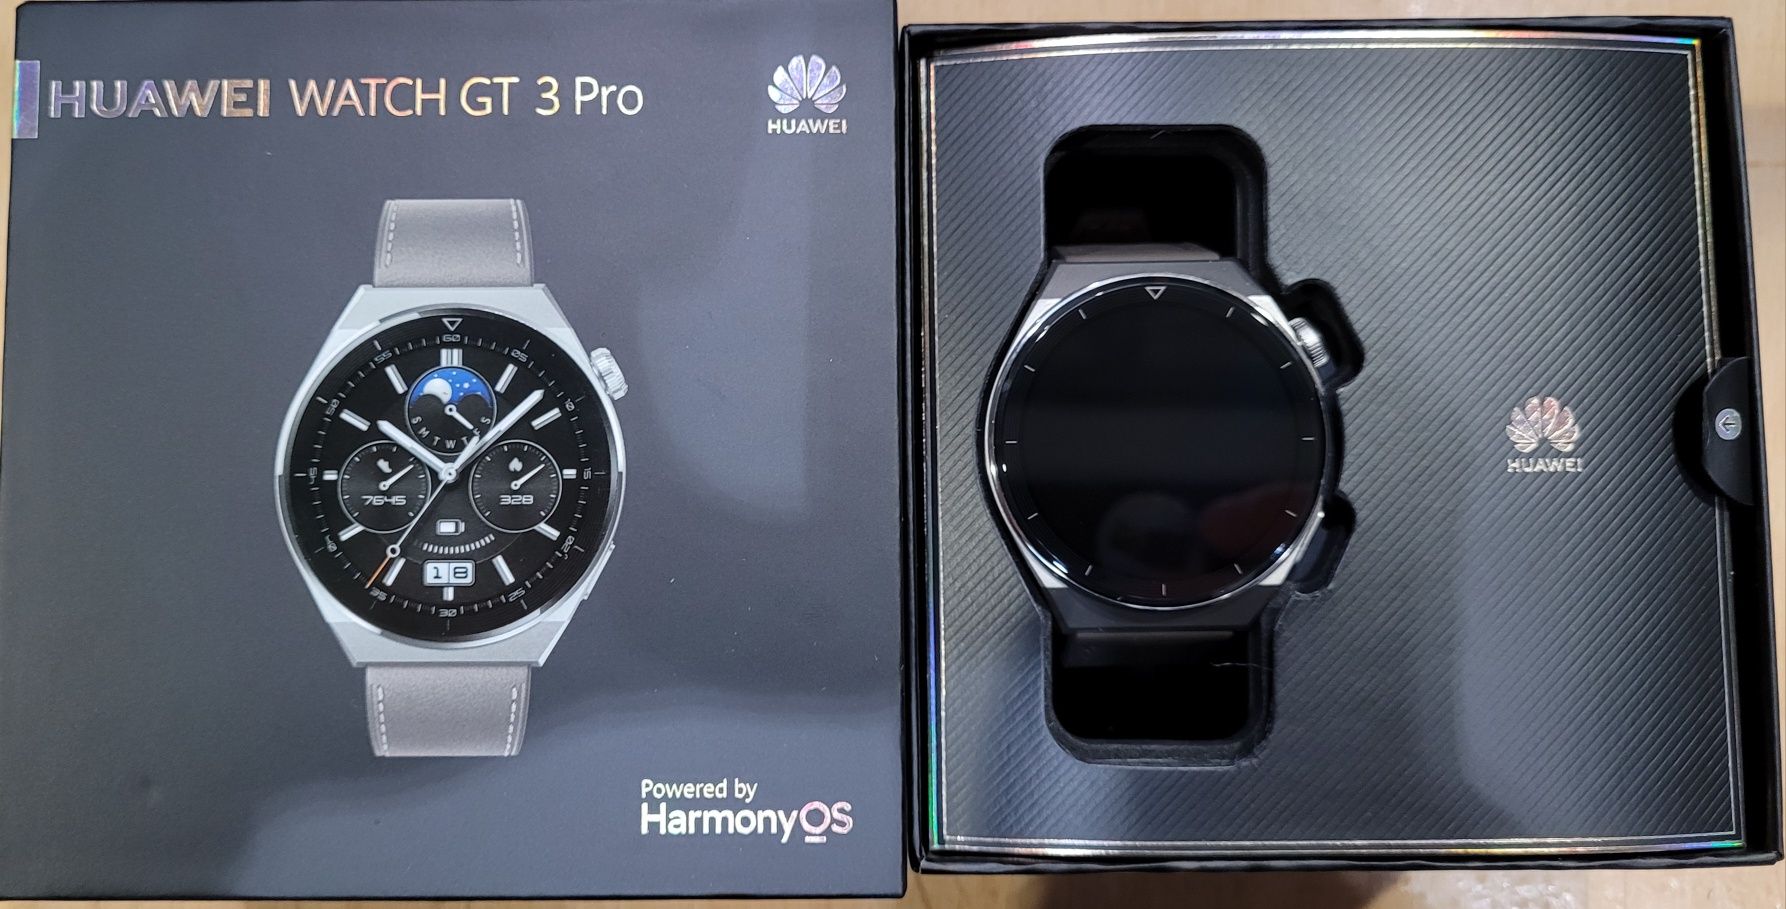 Smartwatch HUAWEI Watch GT 3 Pro Classic 46mm Srebrno-brązowy